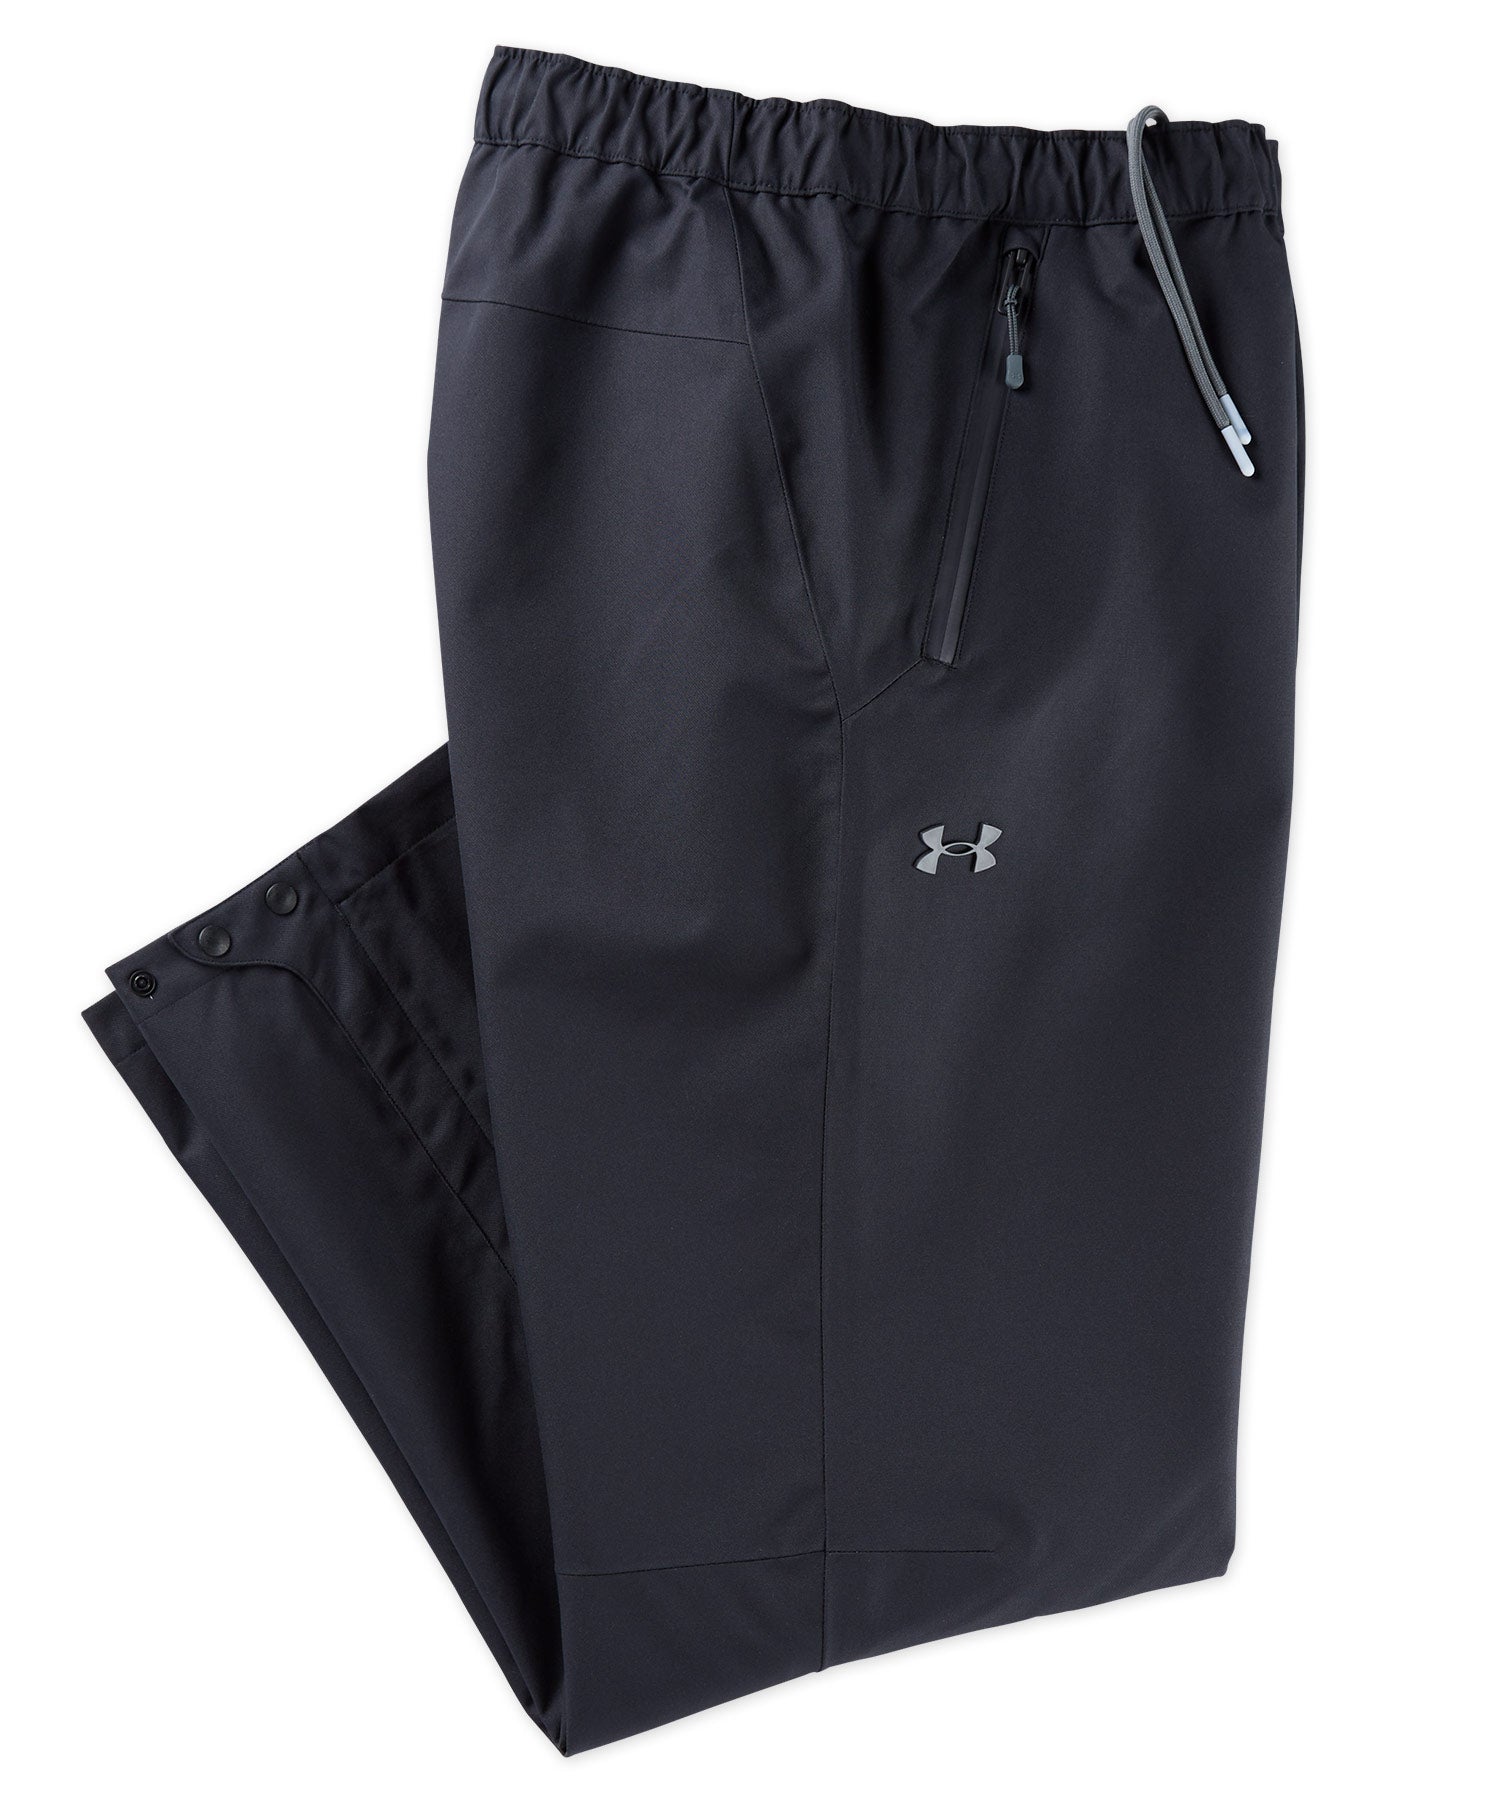 Pockets For Women - Peter Storm Women's Storm Waterproof Trousers, Black